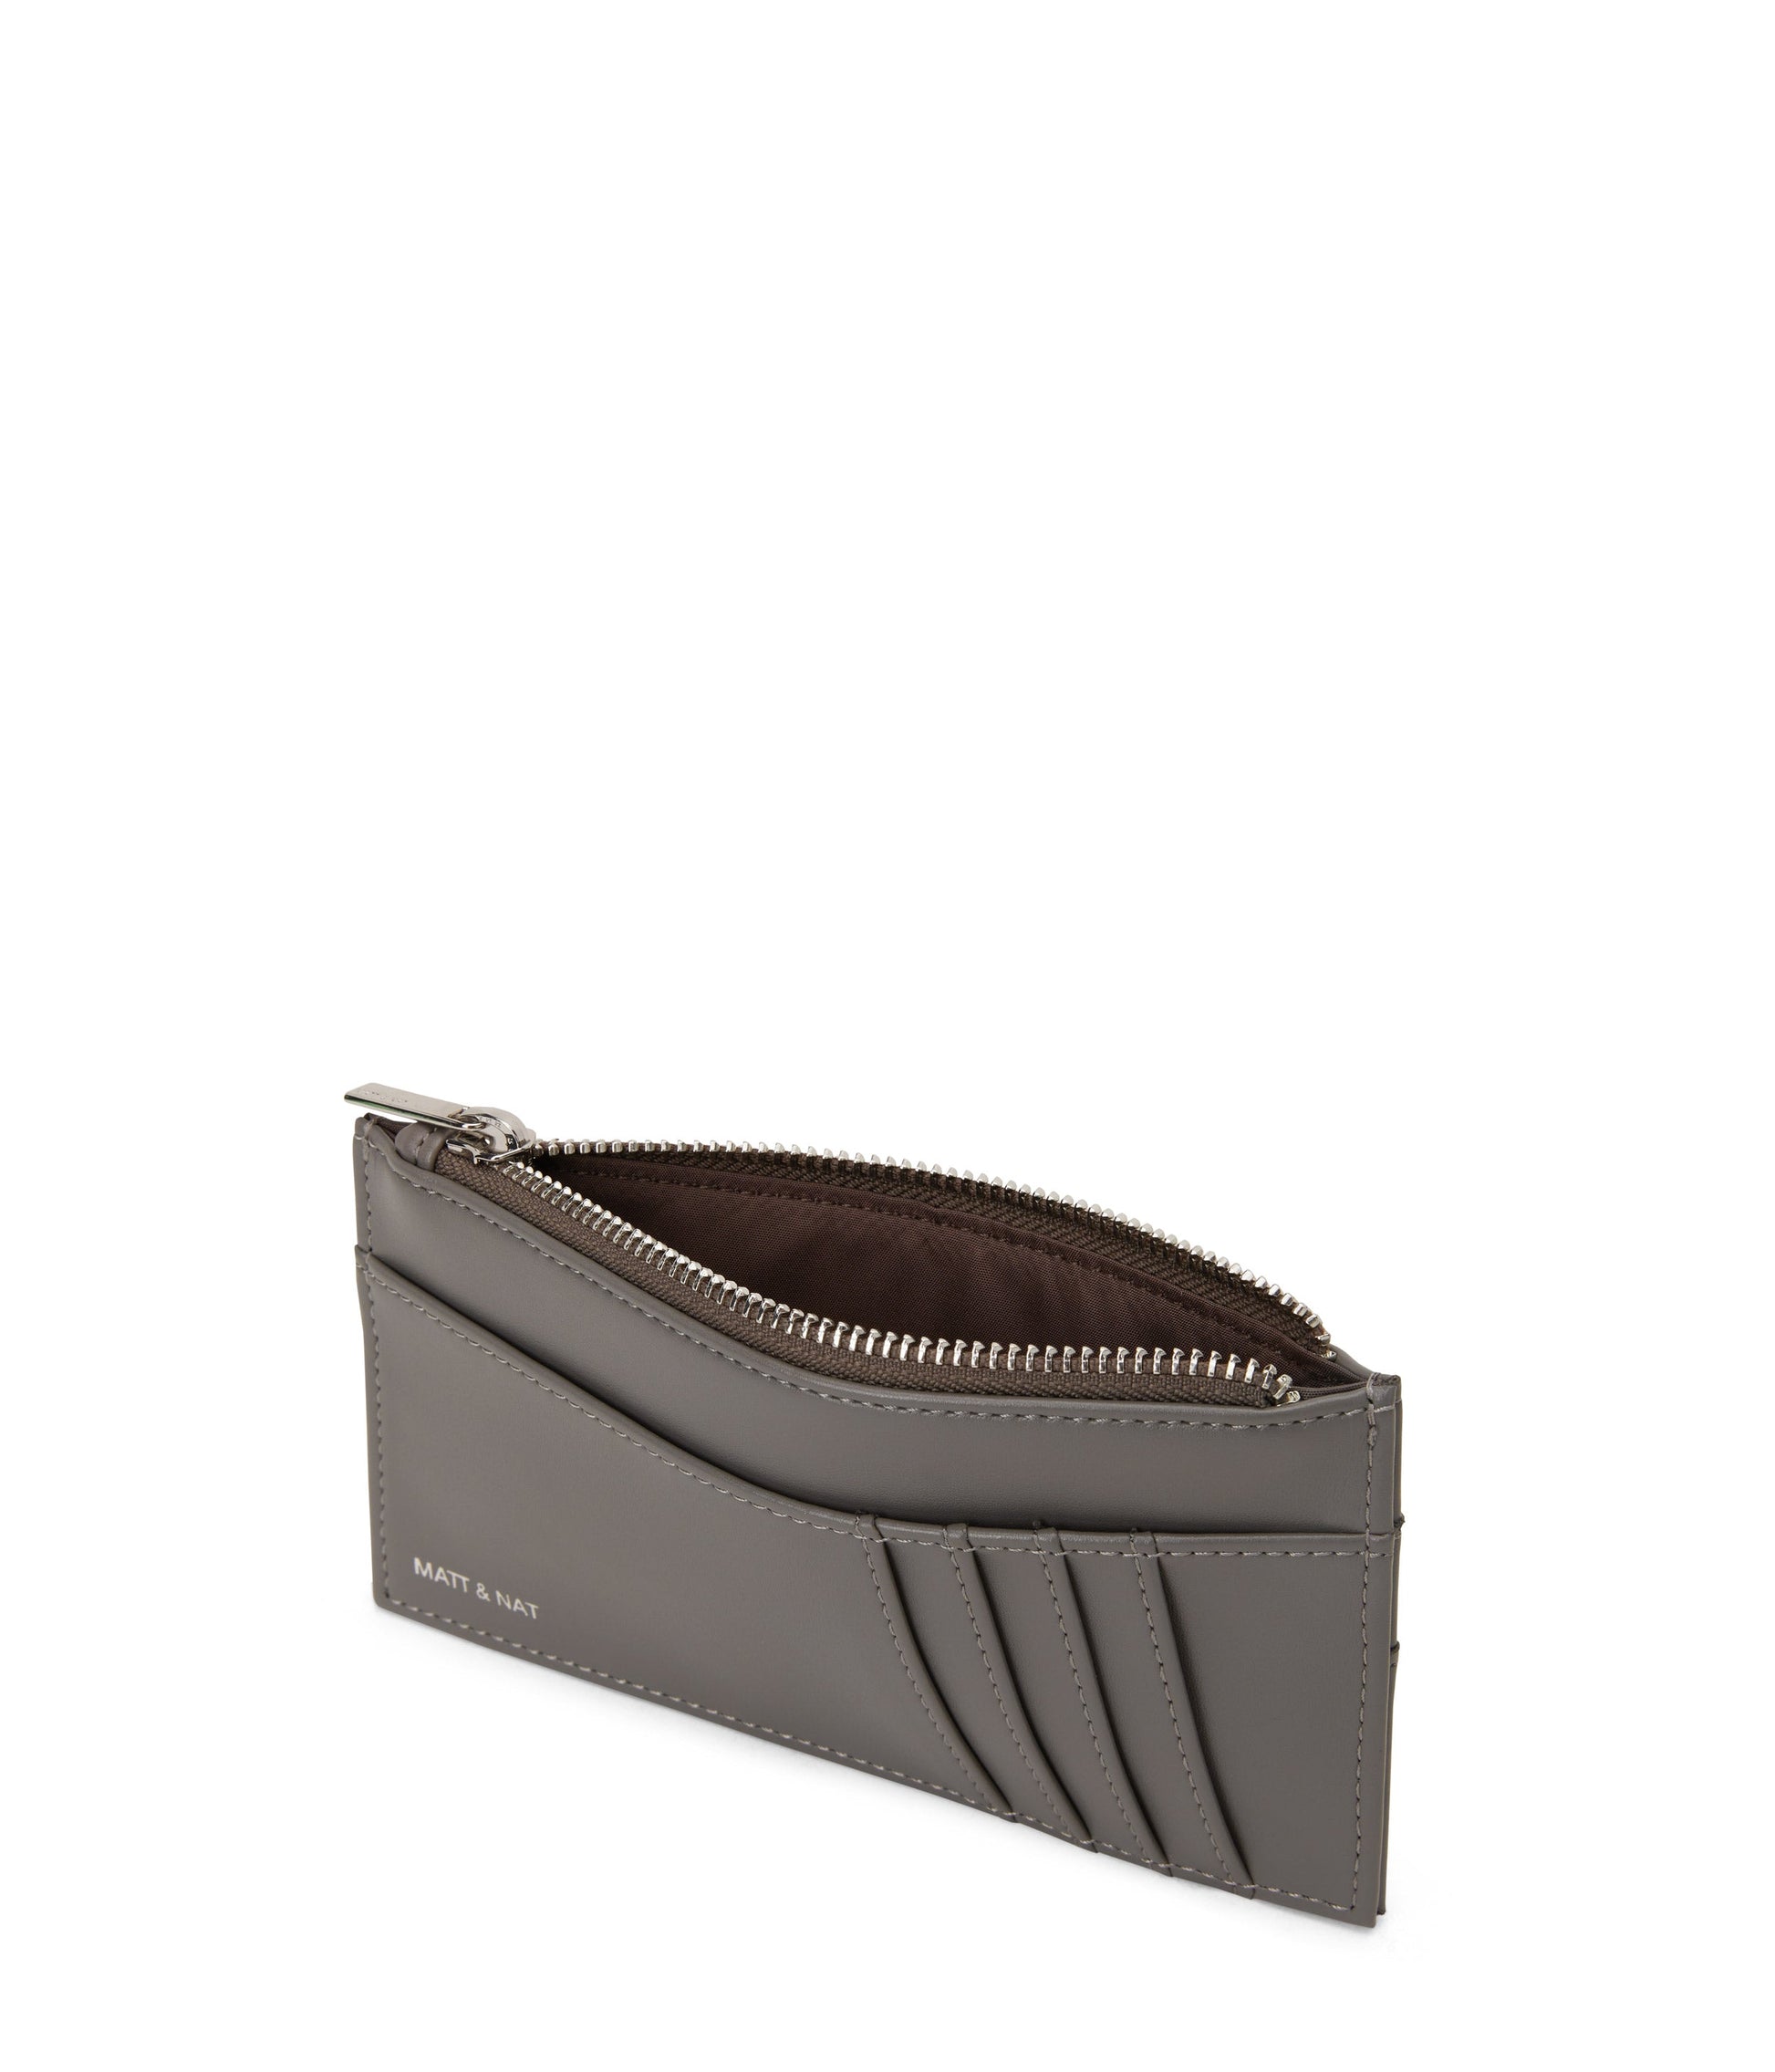 NOLLY Vegan Wallet - Loom | Color: Grey - variant::essence